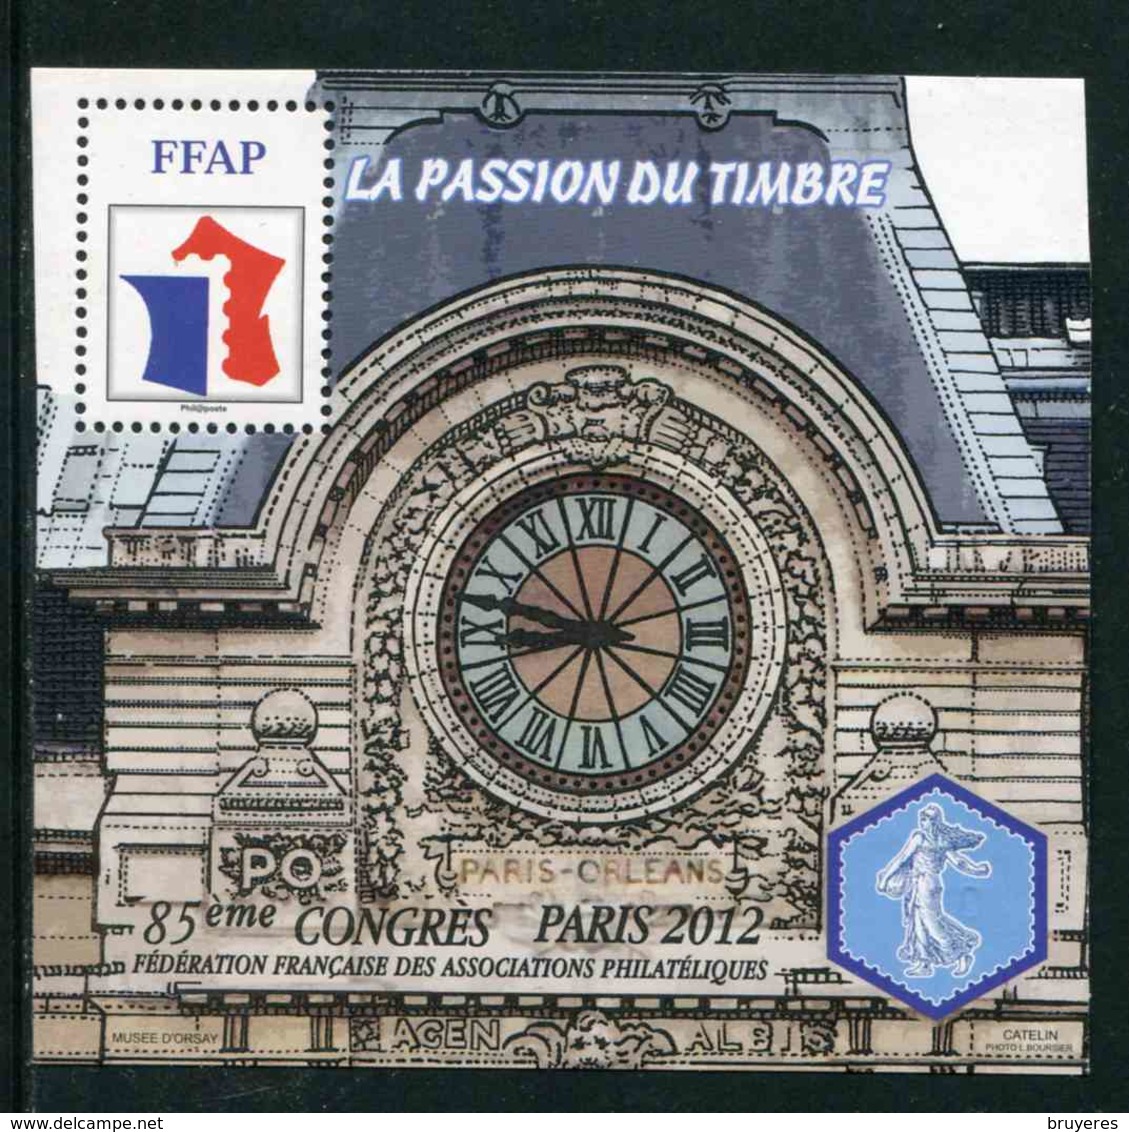 FEUILLET-SOUVENIR** De 2012 De La FFAP "85ème CONGRES POITIERS - LA PASSION DU TIMBRE - Gare D'Orsay" - FFAP